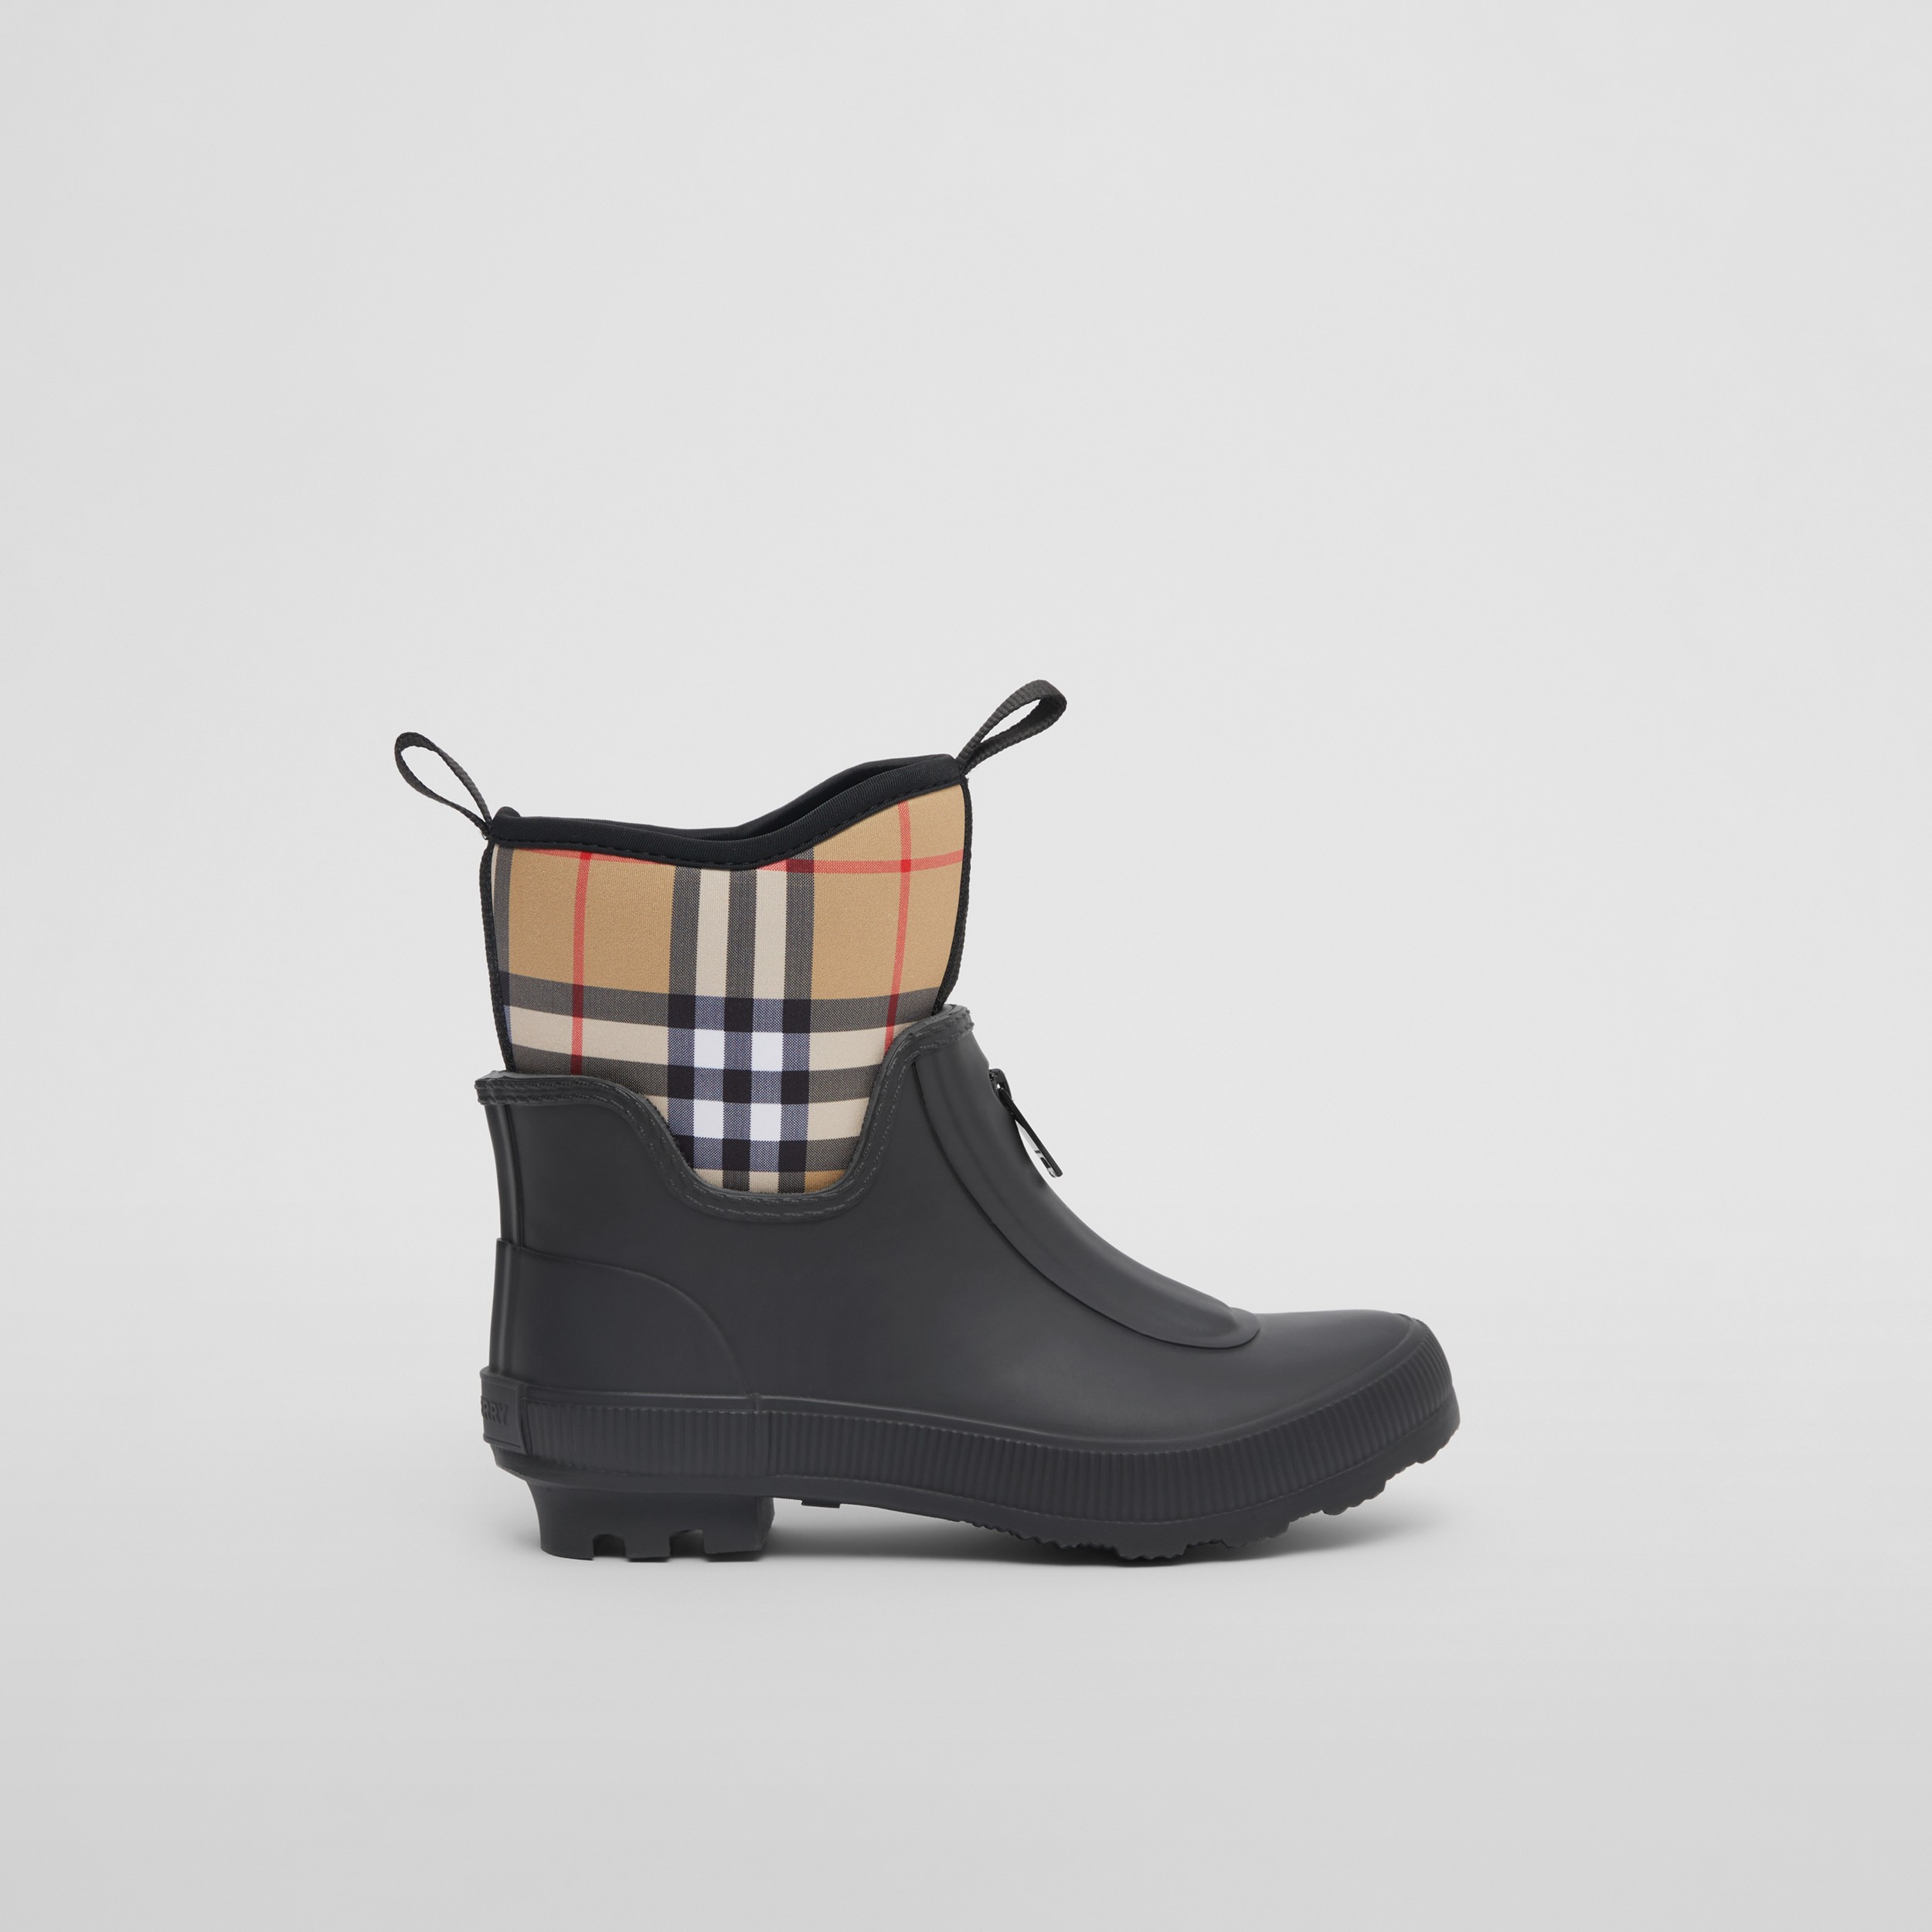 Sparen Sie 58% Damen Schuhe Stiefel Gummistiefel Burberry Neopren Regenstiefel aus Neopren und Gummi im Vintage Check-Design in Grün 